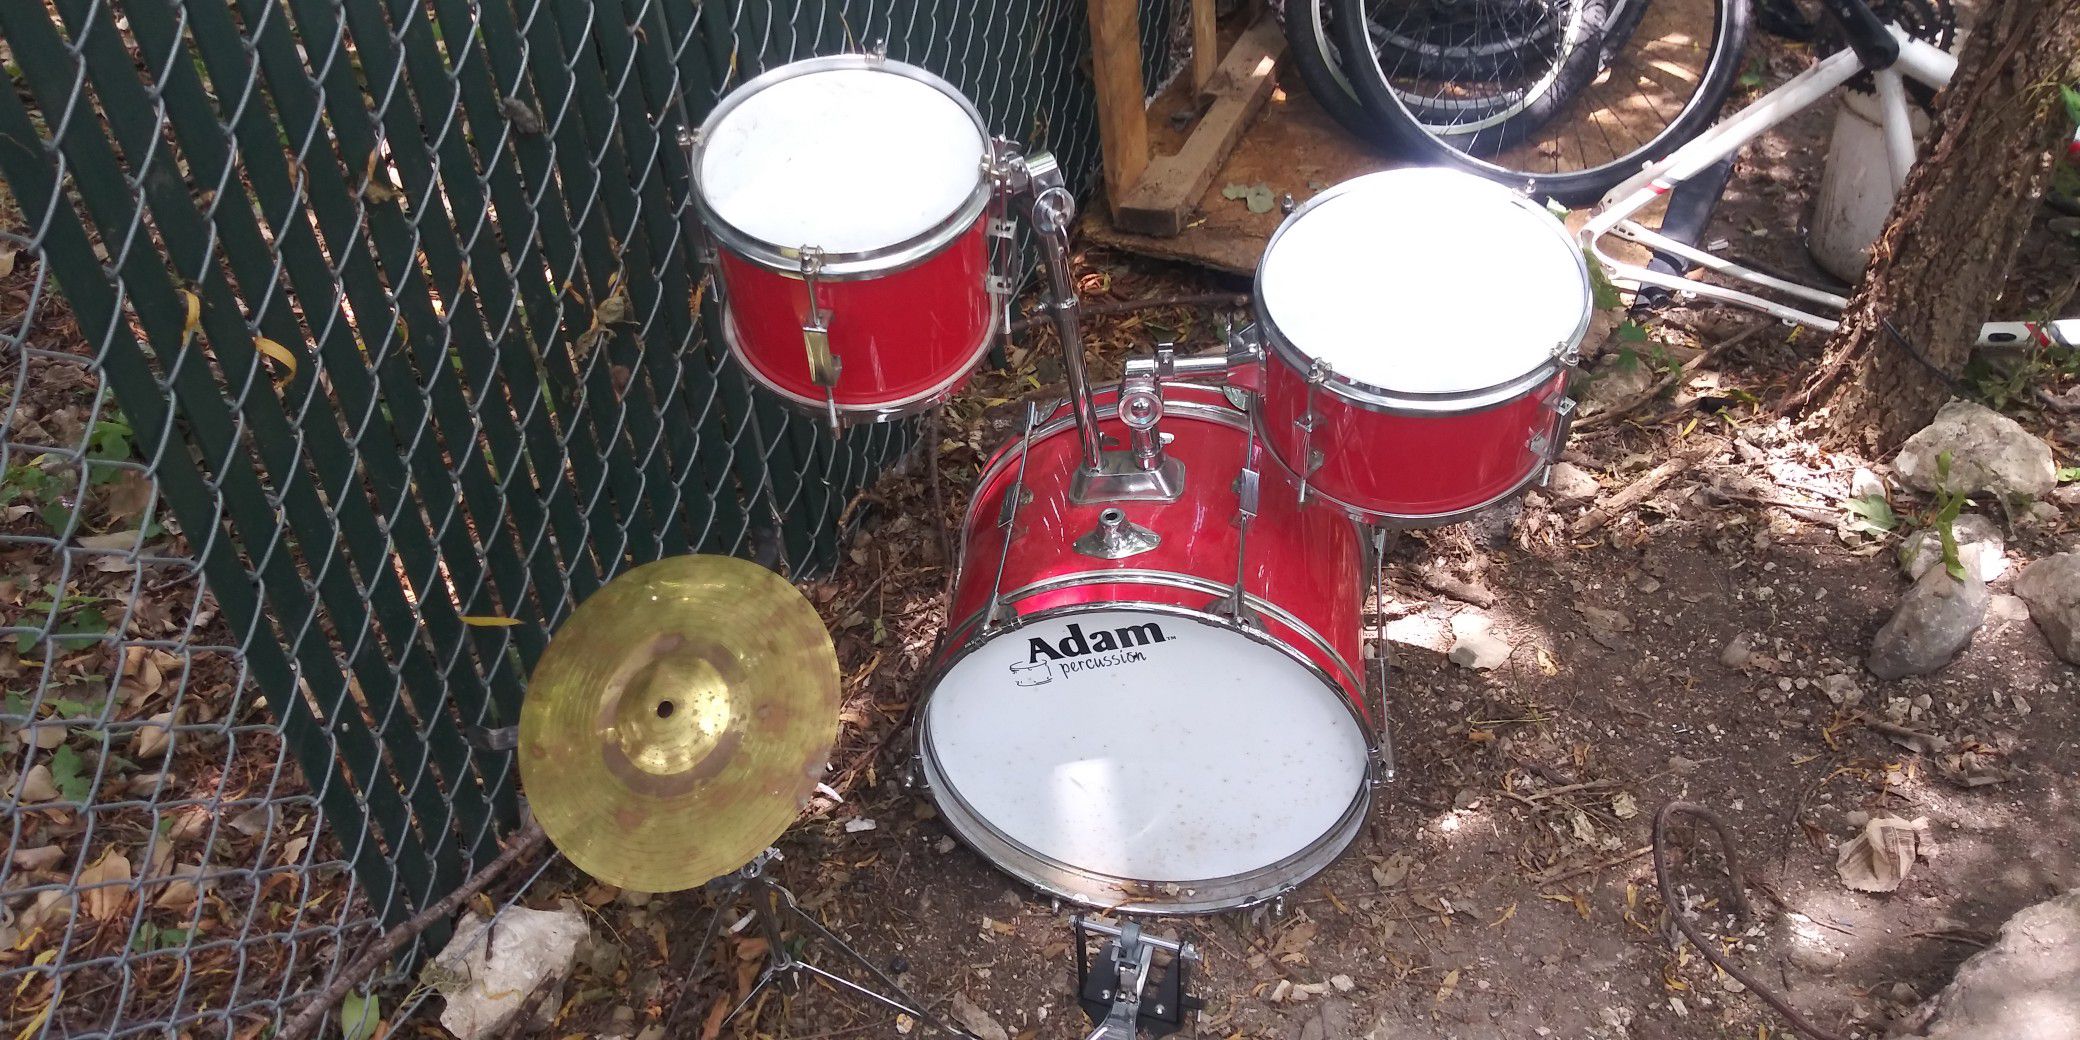 Adam percussion drum set